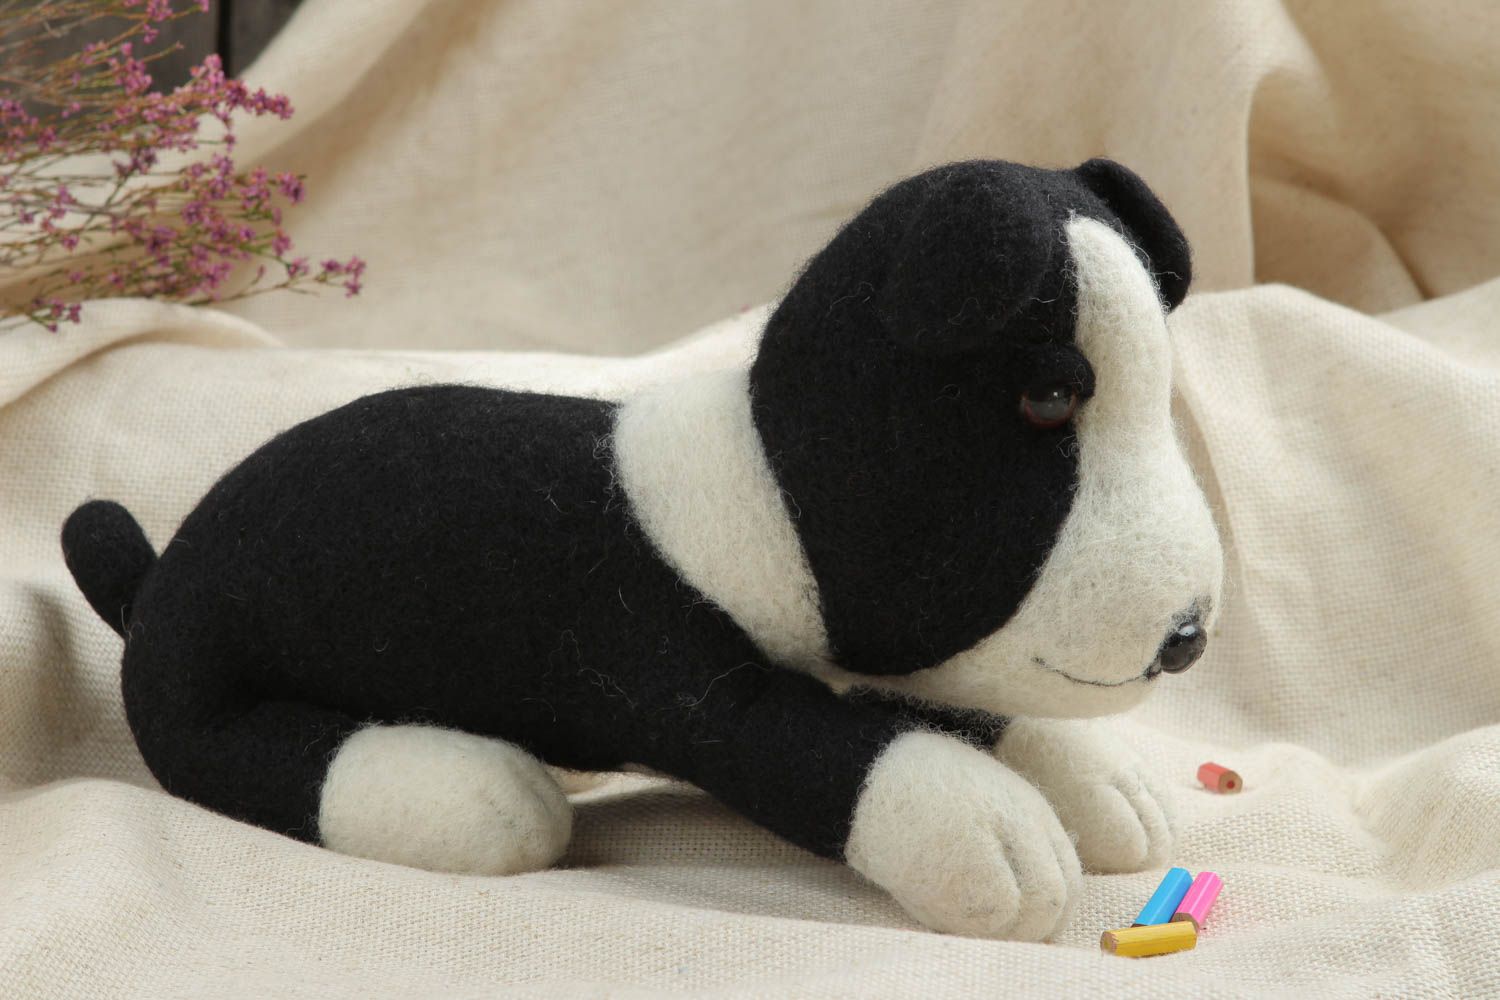 Handmade Spielsachen für Kinder Öko Kinderspielzeug Plüsch Hund schwarz weiß foto 1